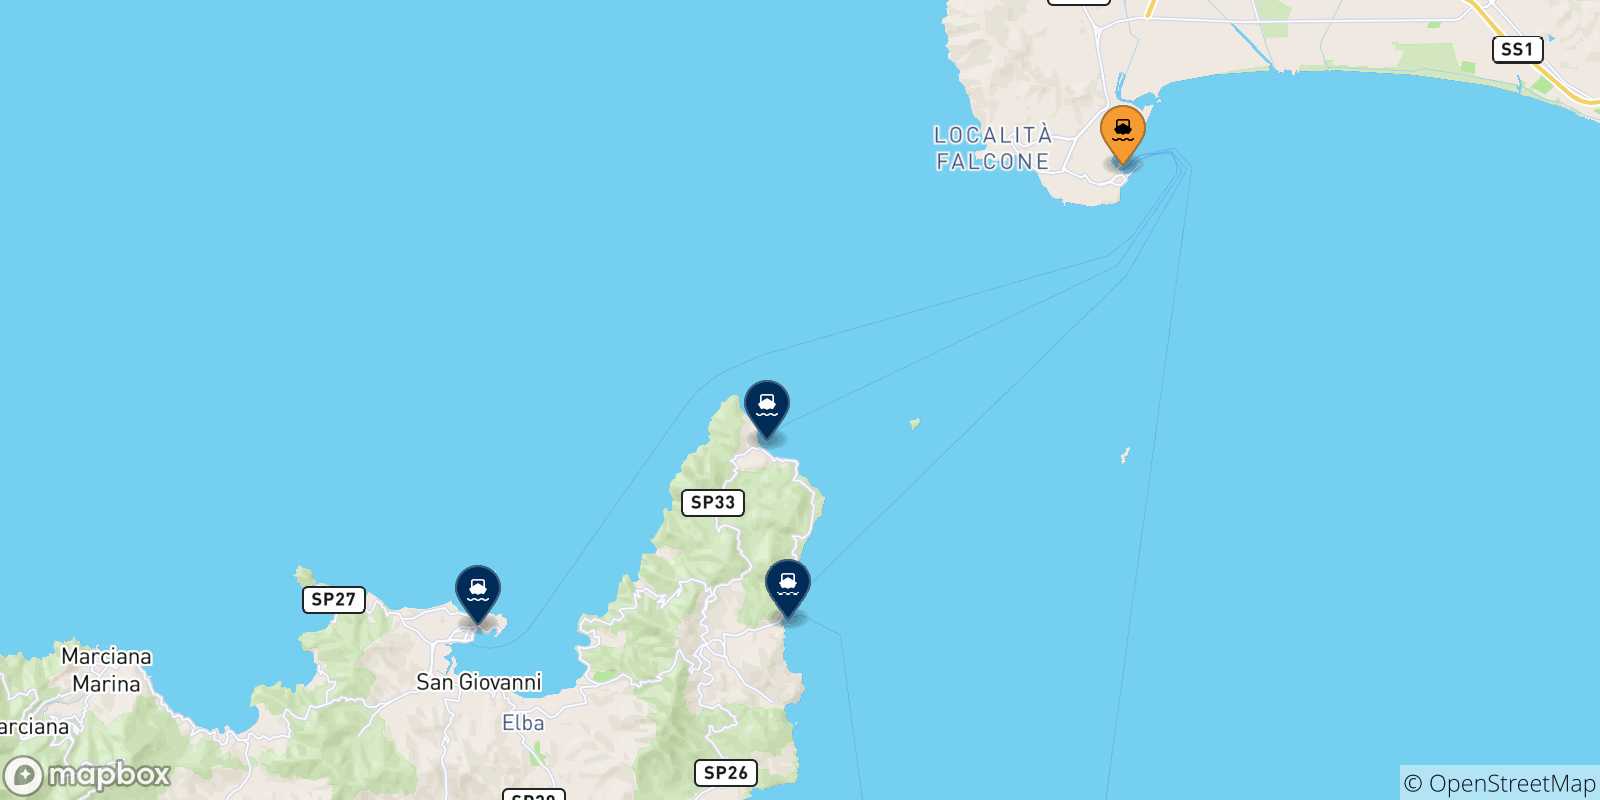 Mappa delle possibili rotte tra Piombino e l'Isola D'elba